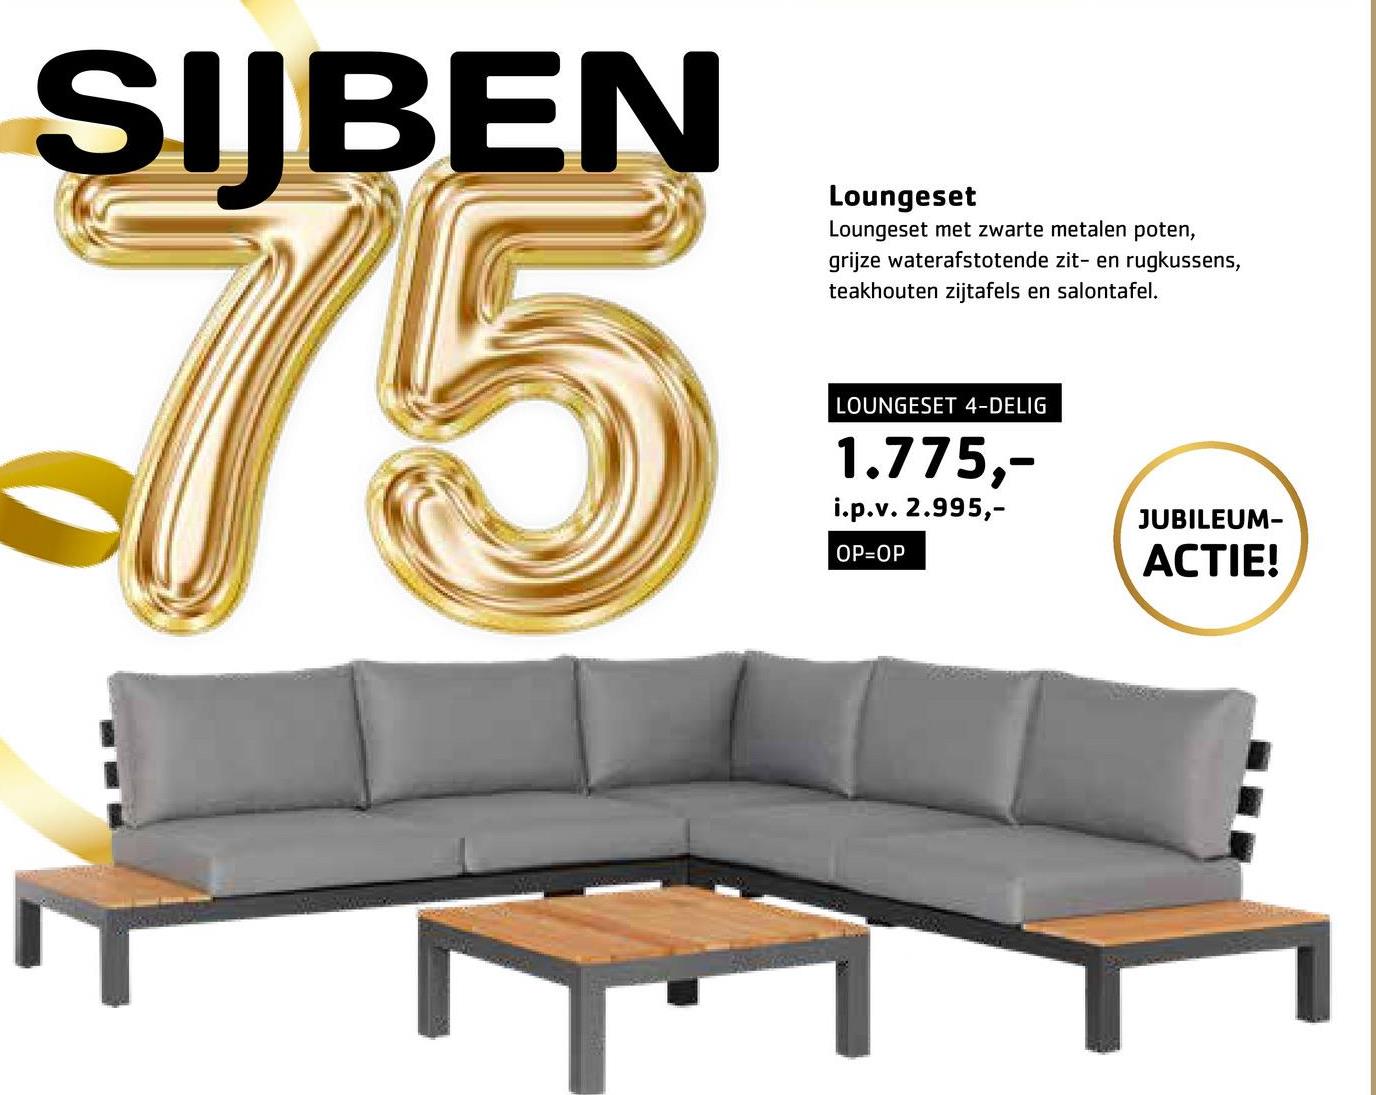 SIJBEN
75
Loungeset
Loungeset met zwarte metalen poten,
grijze waterafstotende zit- en rugkussens,
teakhouten zijtafels en salontafel.
LOUNGESET 4-DELIG
1.775,-
i.p.v. 2.995,-
OP=OP
JUBILEUM-
ACTIE!